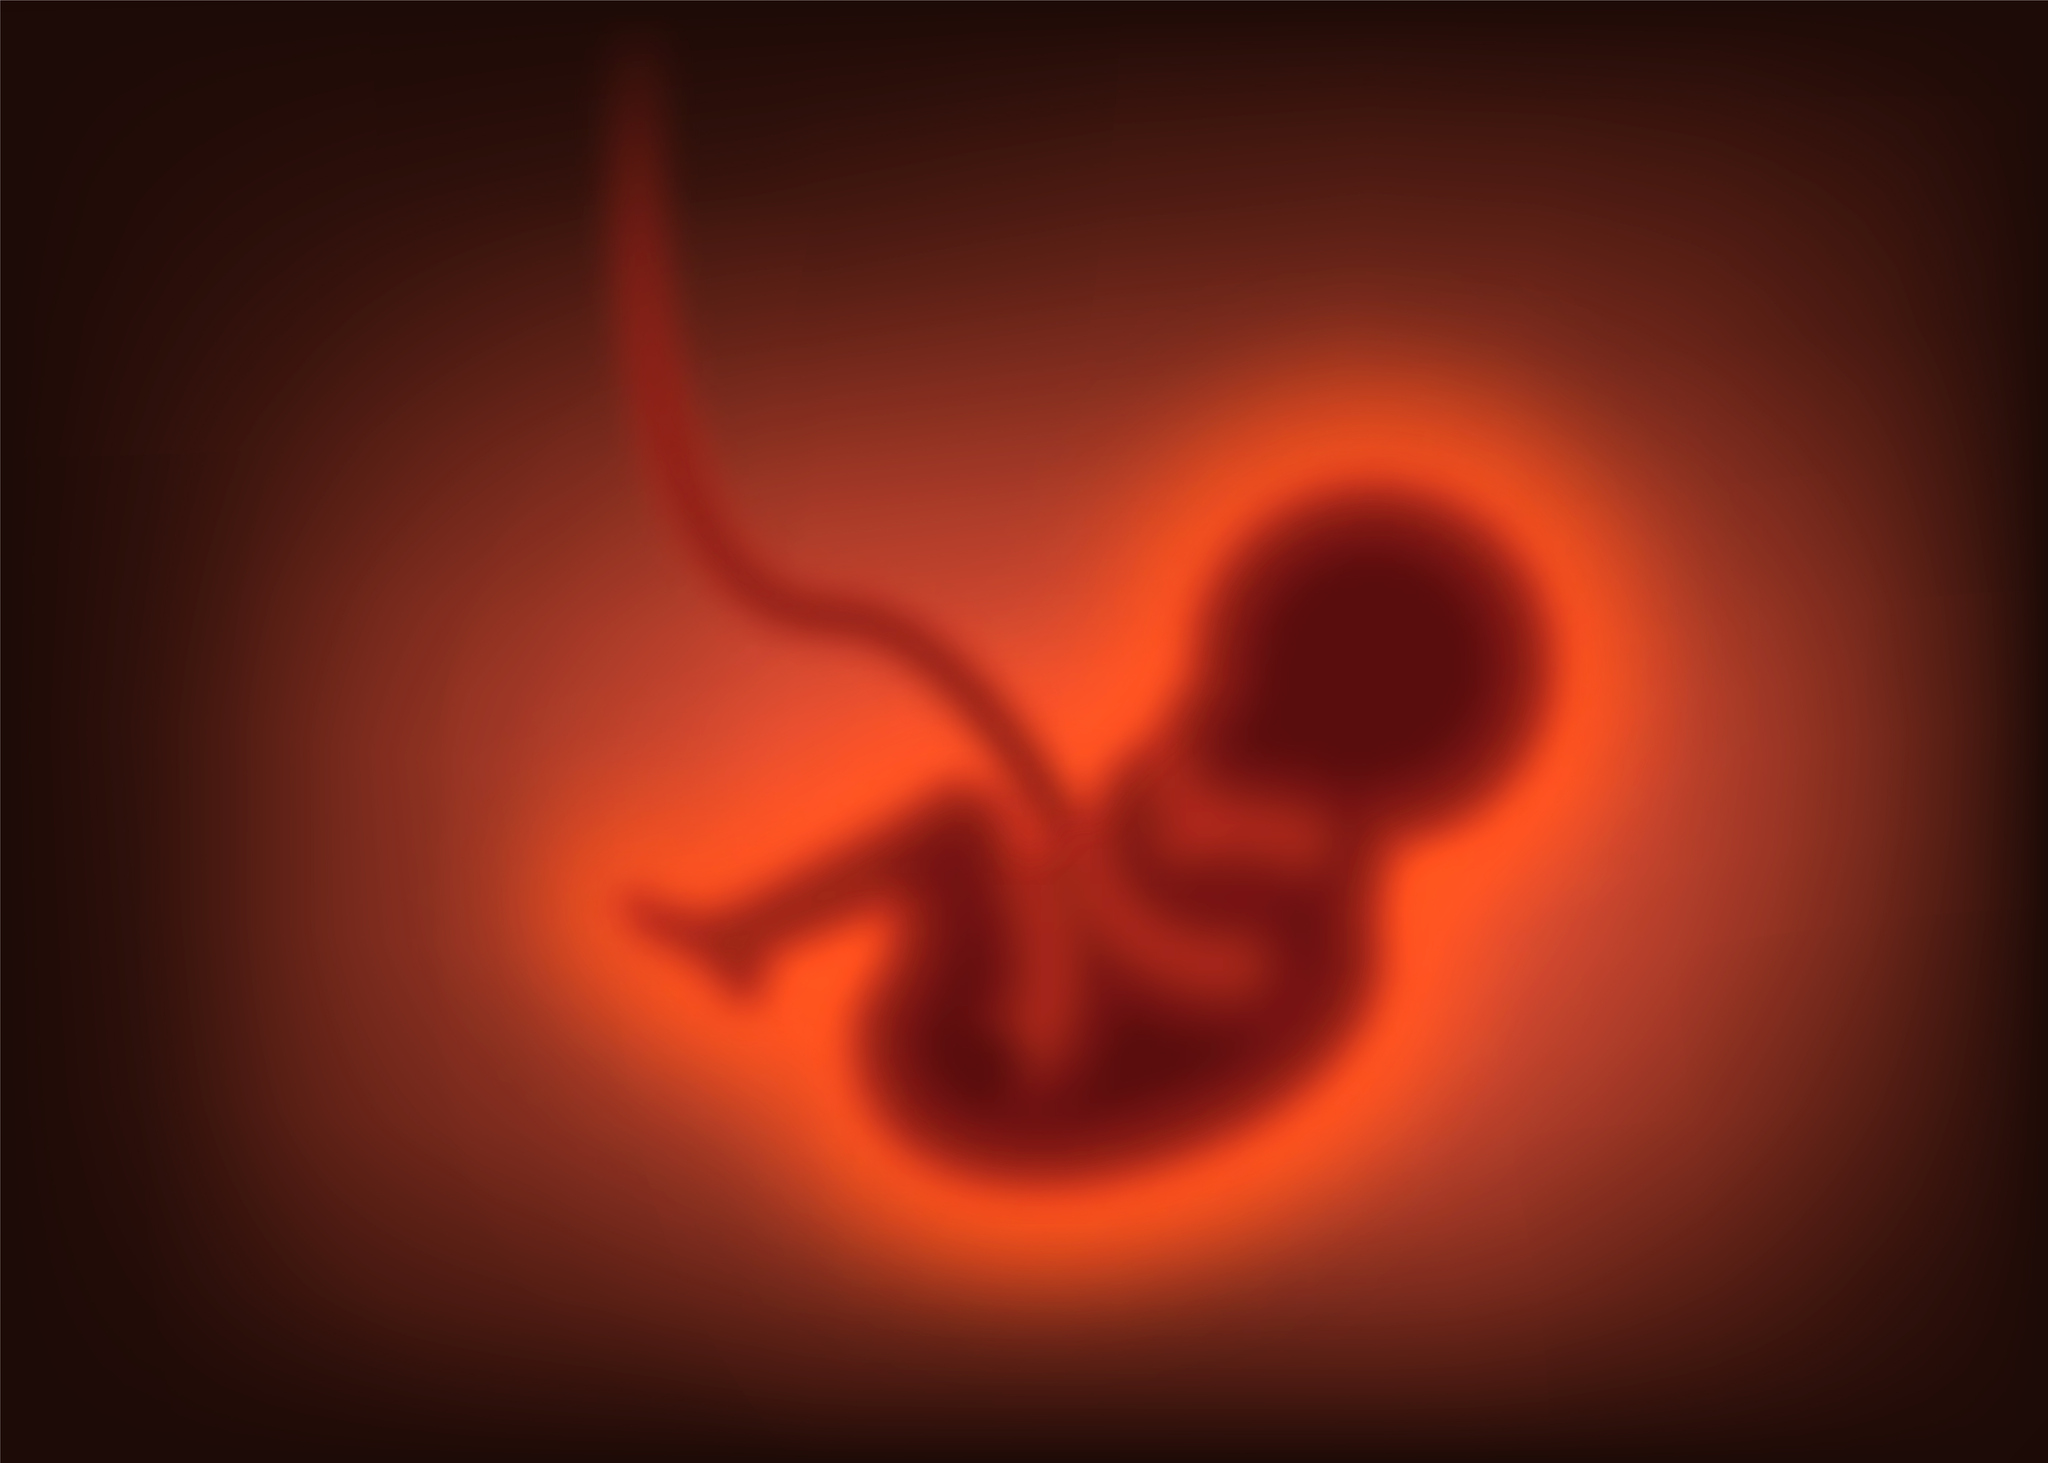 Crean por primera vez embriones humanos sintéticos